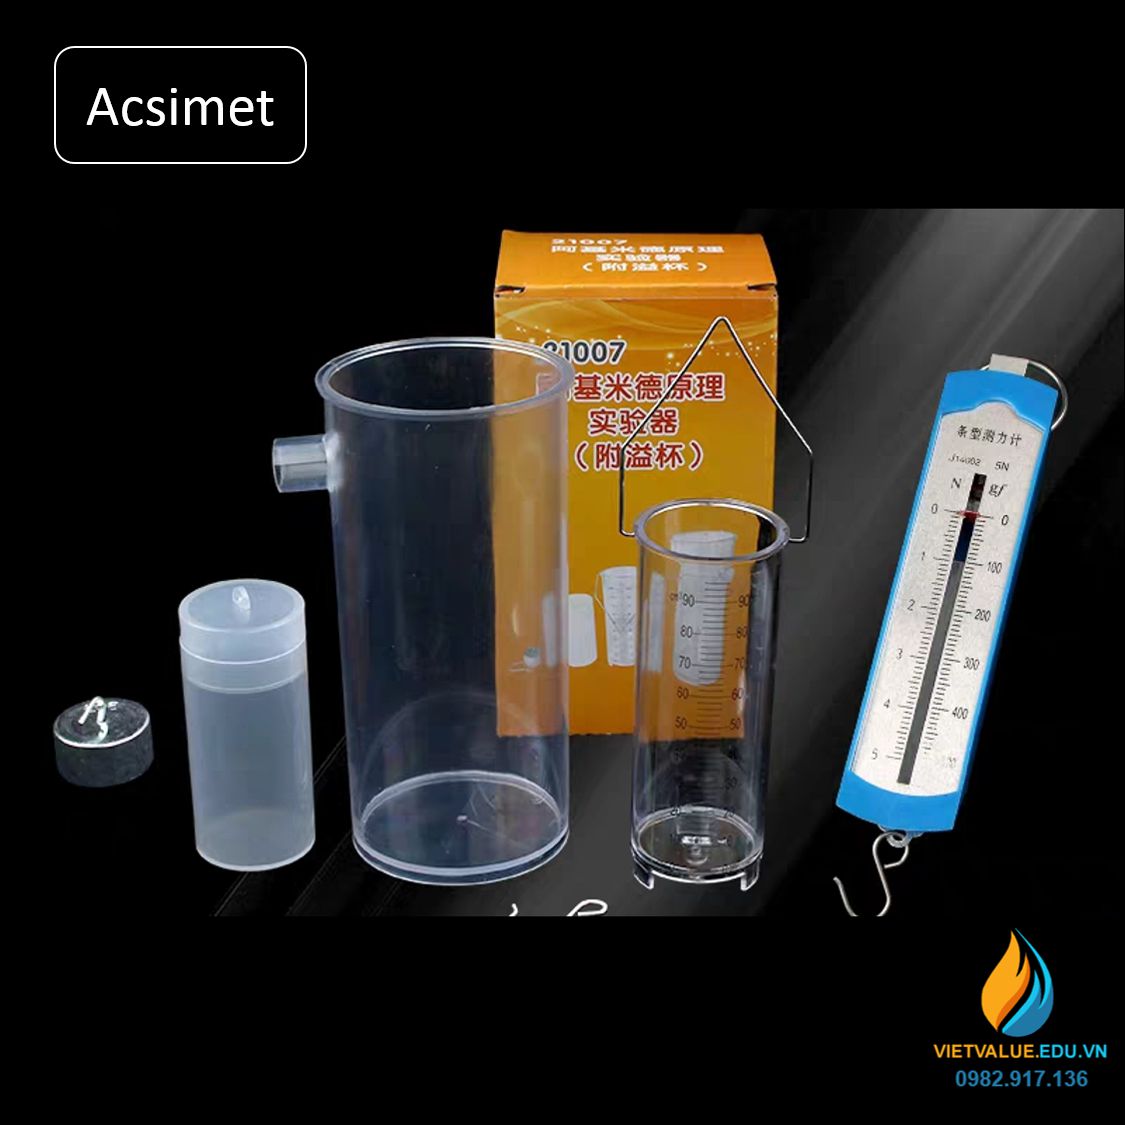 Bộ dụng cụ thực hành định luật Acsimet đo lực đẩy của nước, dụng cụ thực nghiệm vật lý